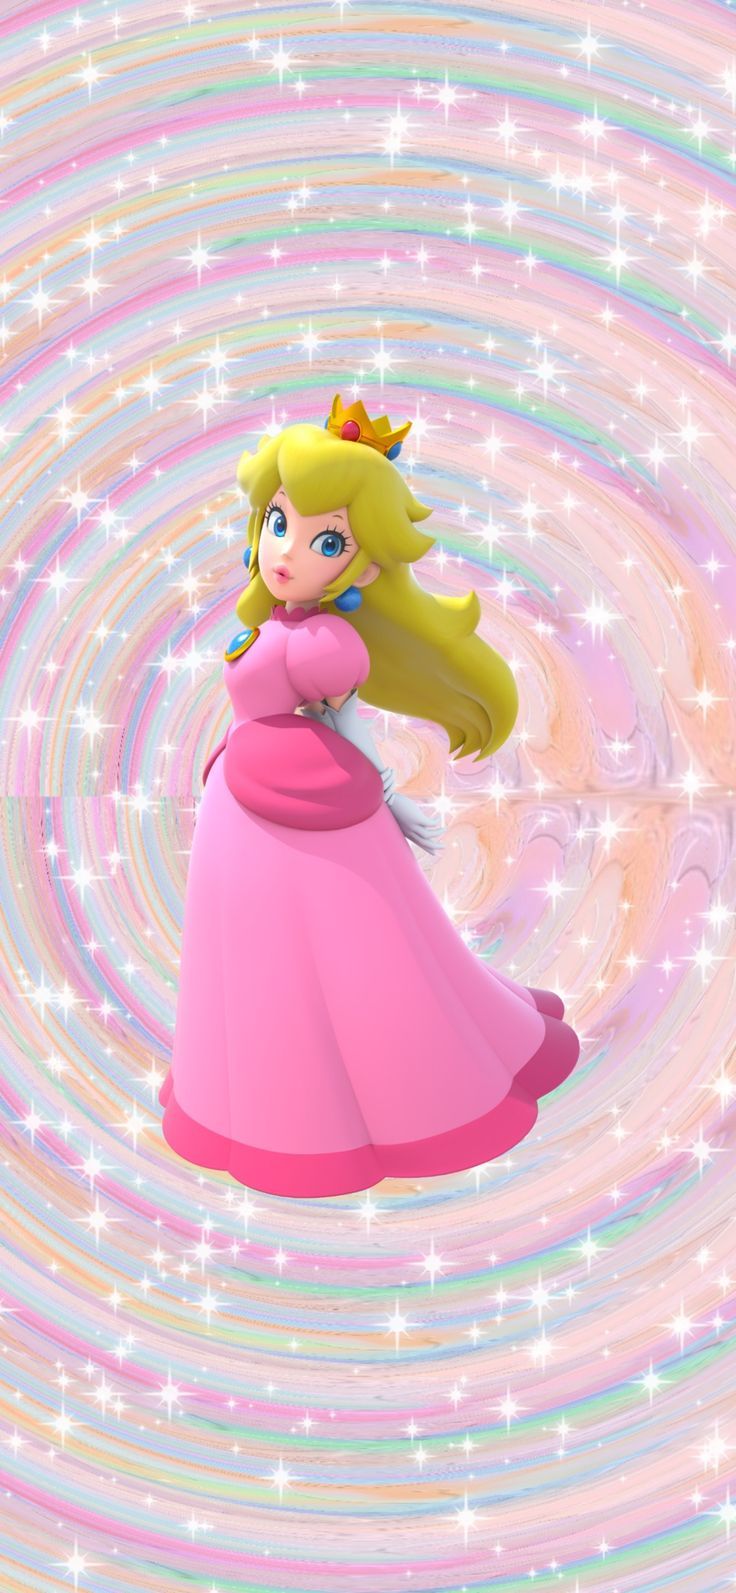 Nintendo princess Peach aesthetic wallpaper. Princesa peach, Cinta de cabeza de tul, Fondos de princesas